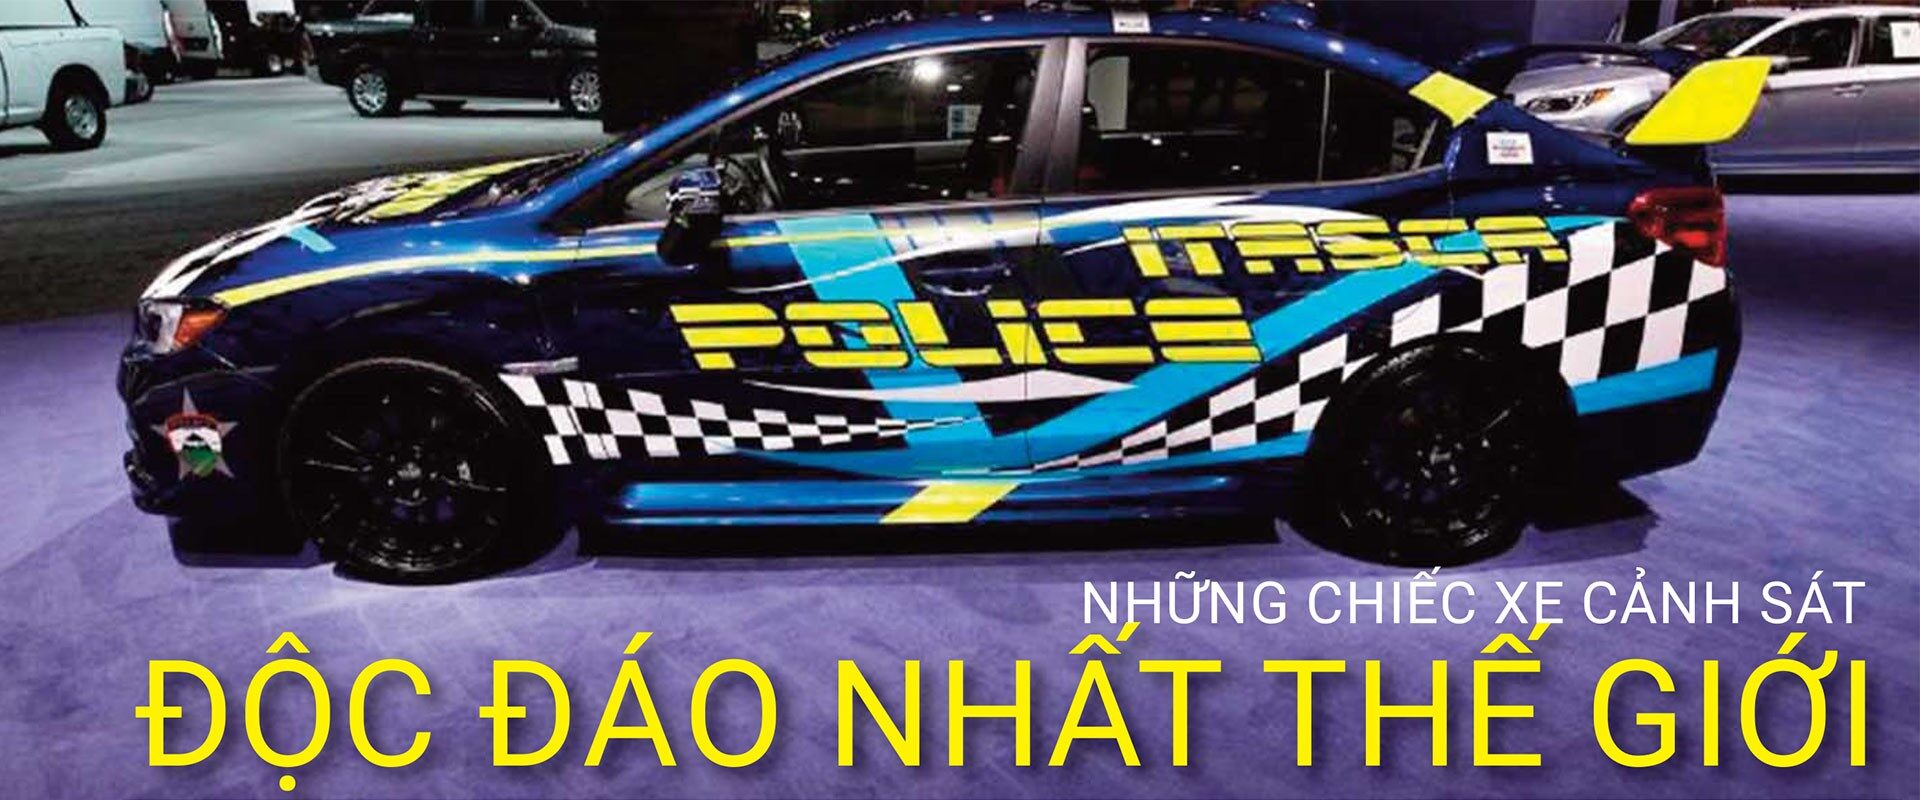 nhung-chiec-xe-canh-sat-doc-dao-nhat-tg-6381.jpg